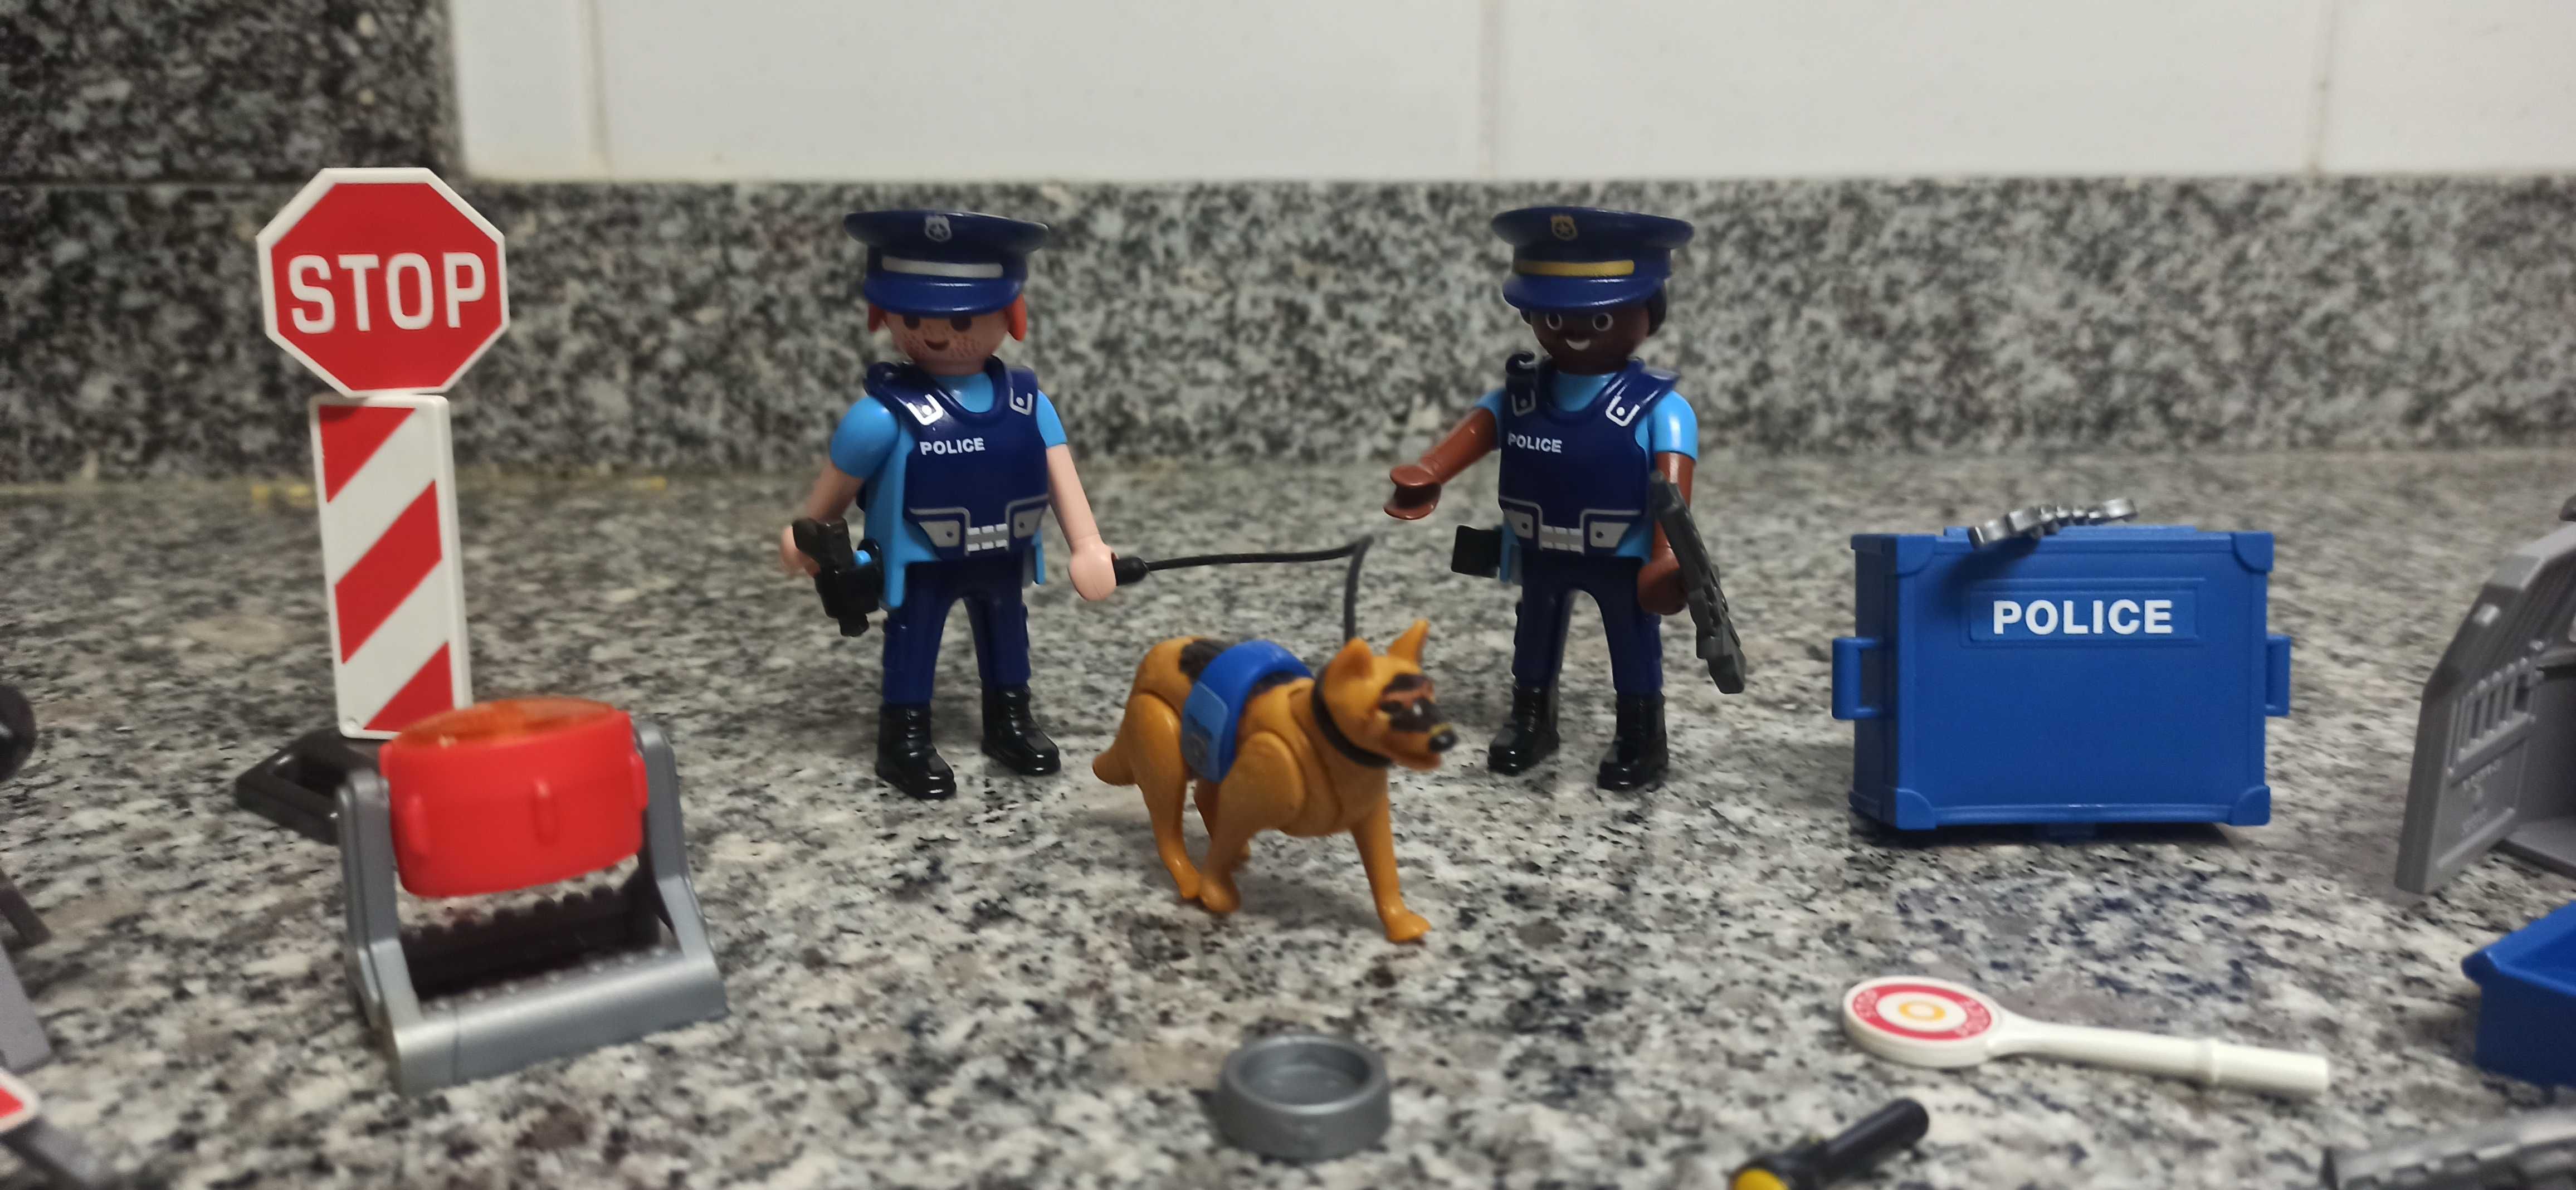 Playmobil polícia de trânsito